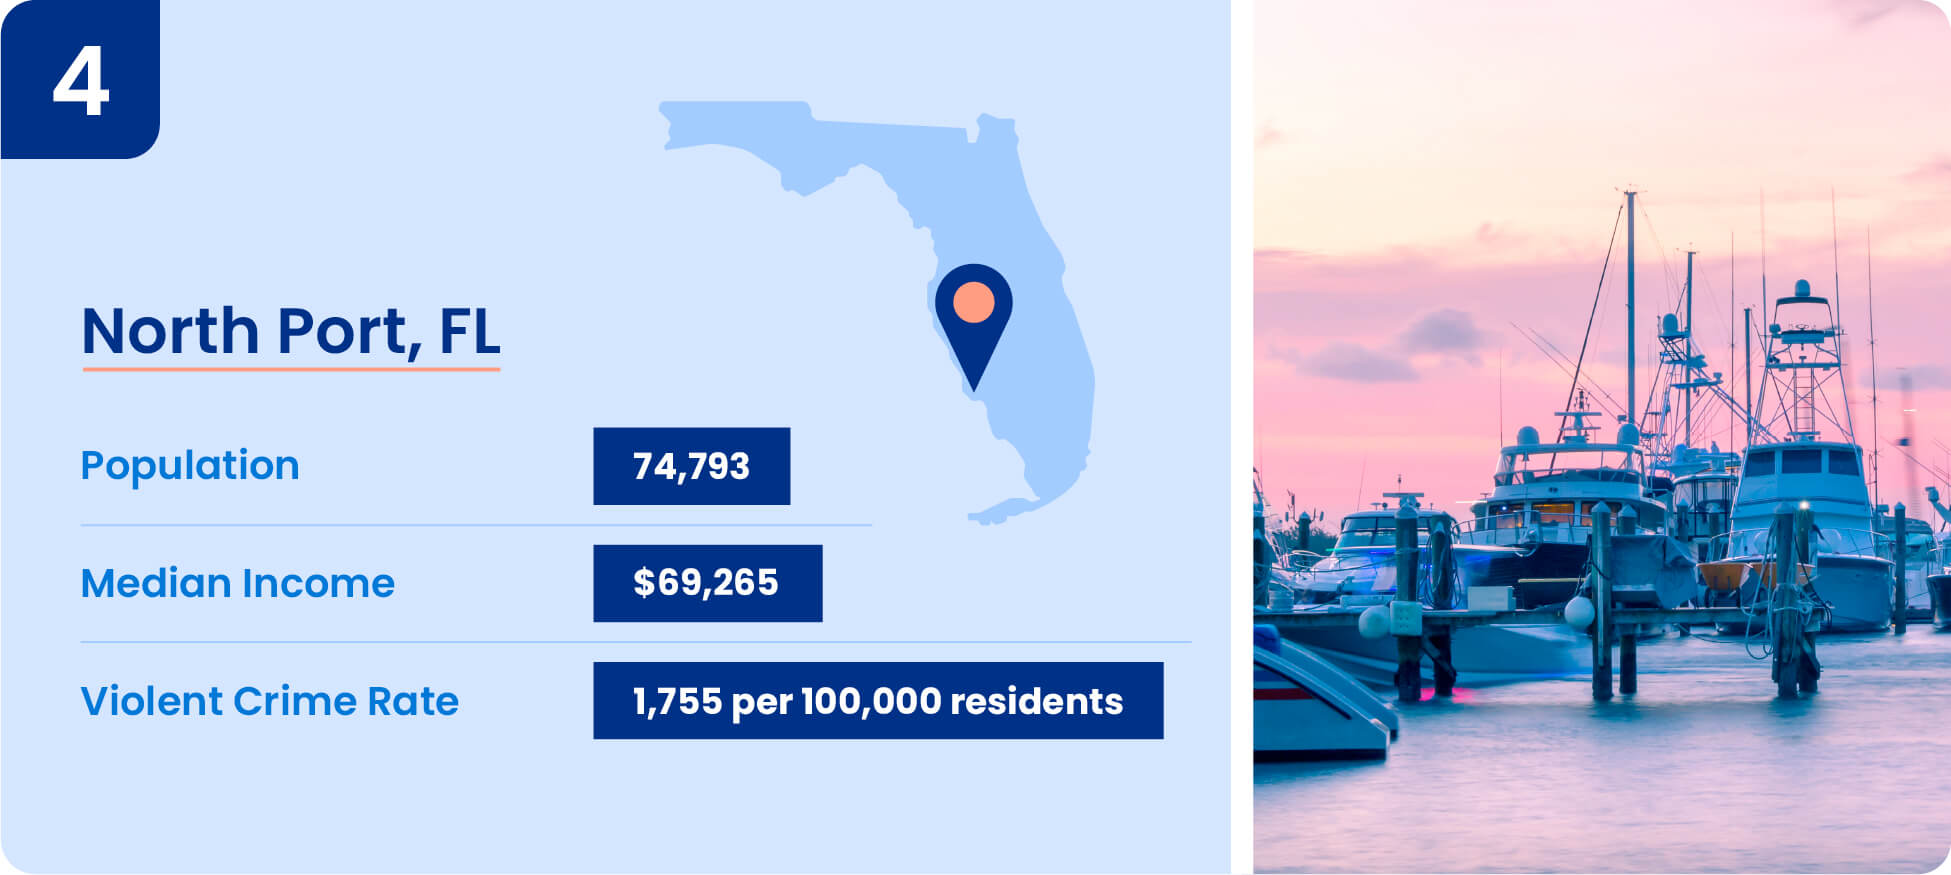 Image shows safety data including median income, population, and violent crime rate for North Port, Florida.